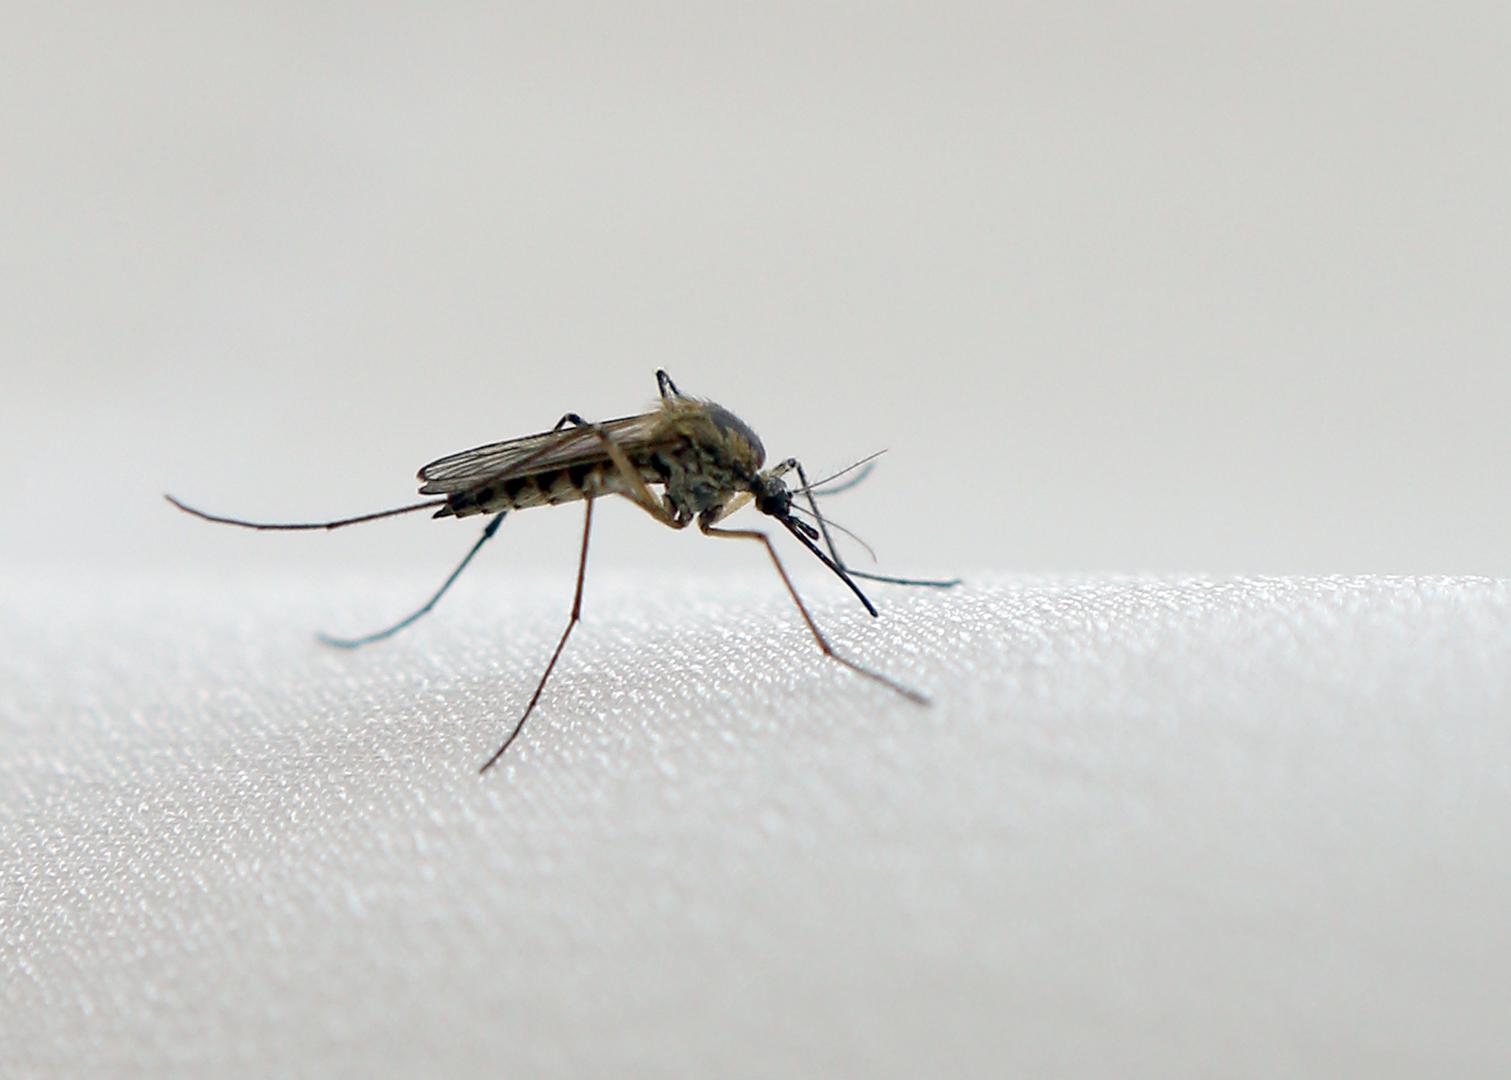 Komarci - Vjerojatno pripadaju skupini najdosadnijih kukaca, a najaktivniji su noću. Žive u 82 posto domova